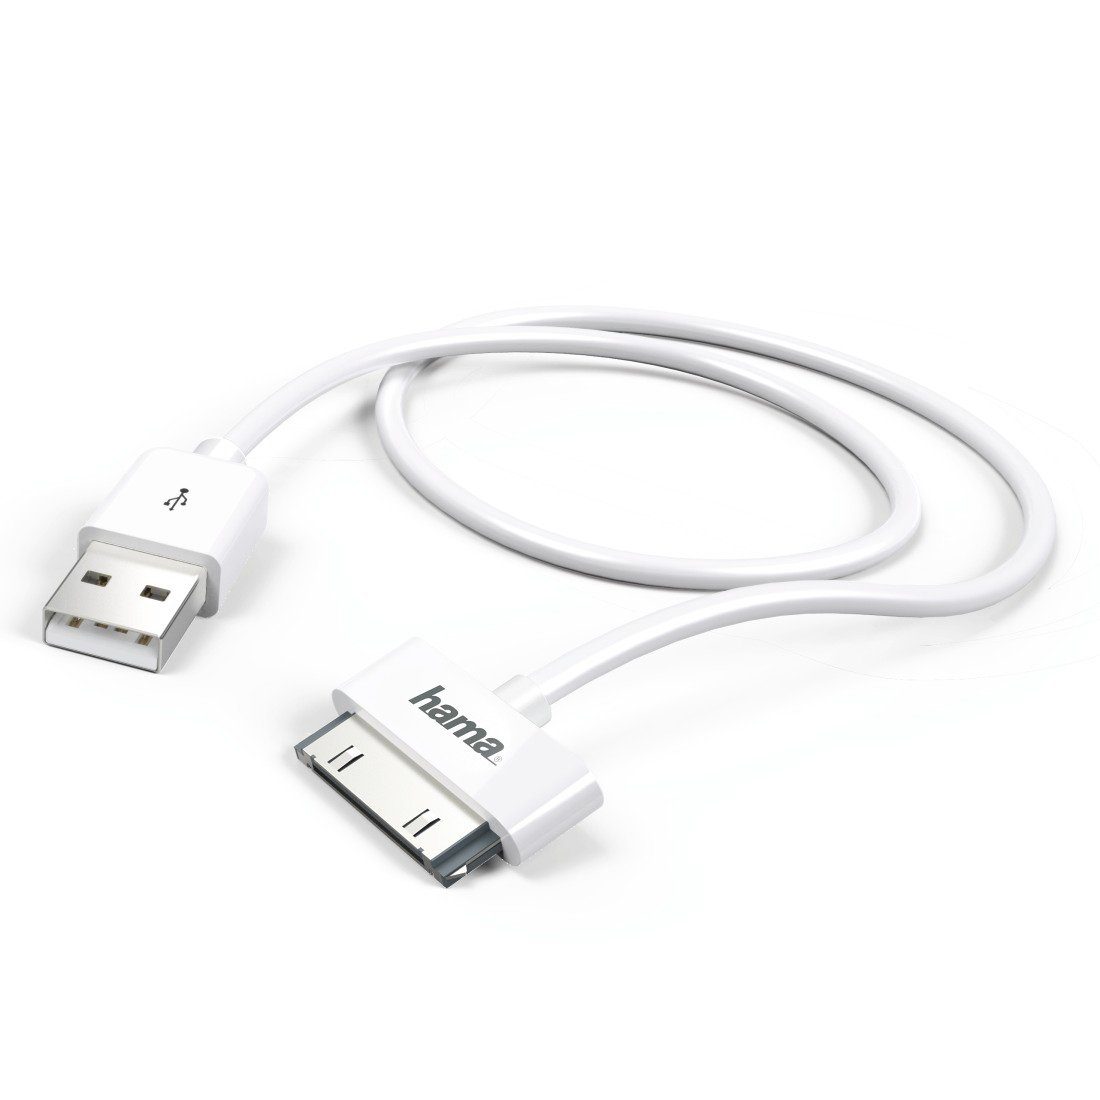 COFI 1453 USB-Ladekabel iPhone 3G/3GS/4/4S iPod, 30-Pin USB-A-Stecker 1m  weiß USB-Adapter